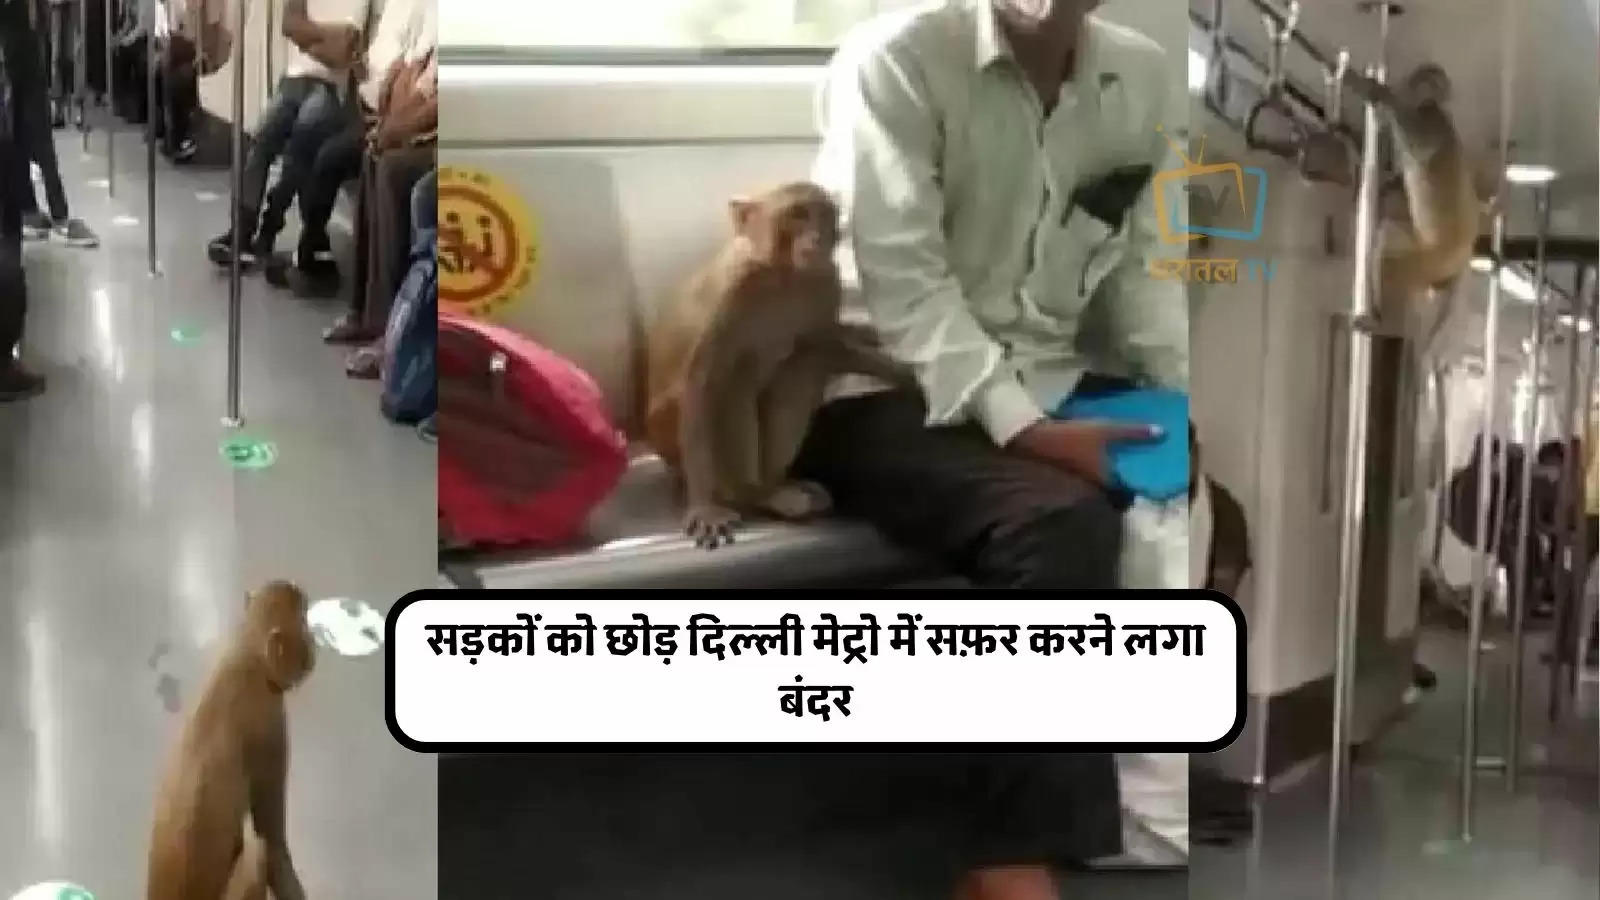 elhi-metro-me-bandar-monkey-ride-in-delhi-metro-see-peoples-reaction-in-viral-vide